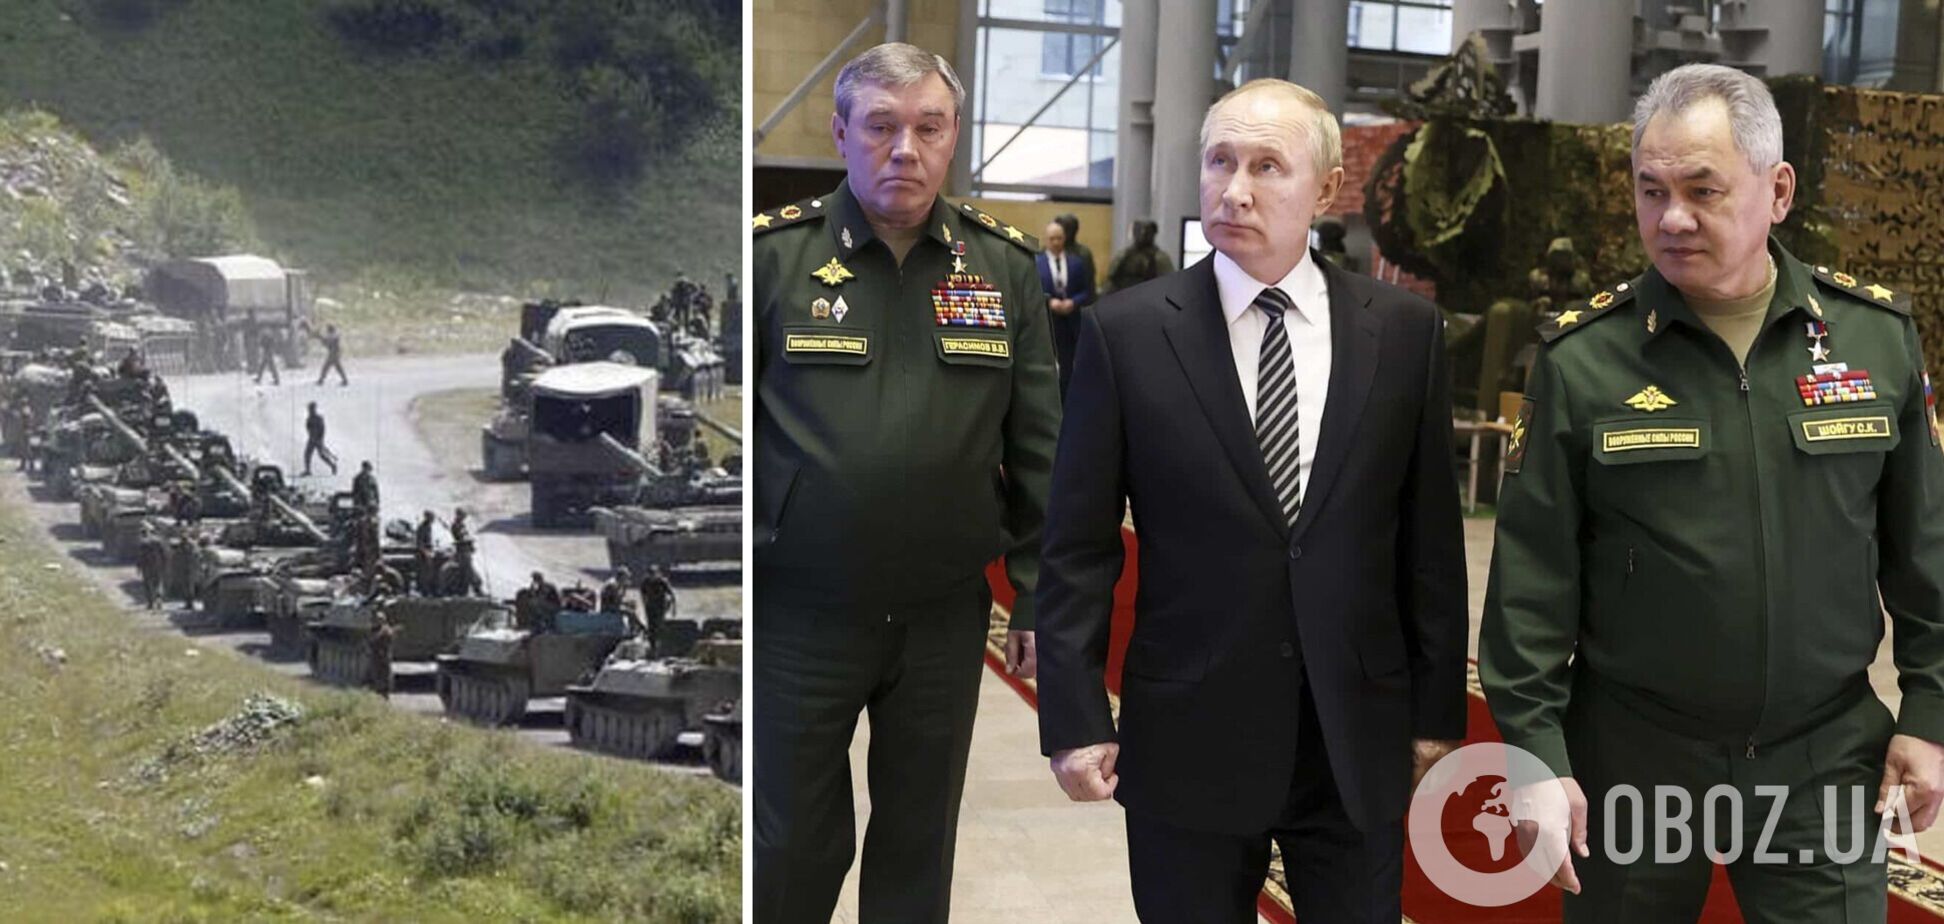 Колони йшли всю ніч: Кремль перекидає частину сил з Донбасу для посилення трьох областей РФ – ЗМІ